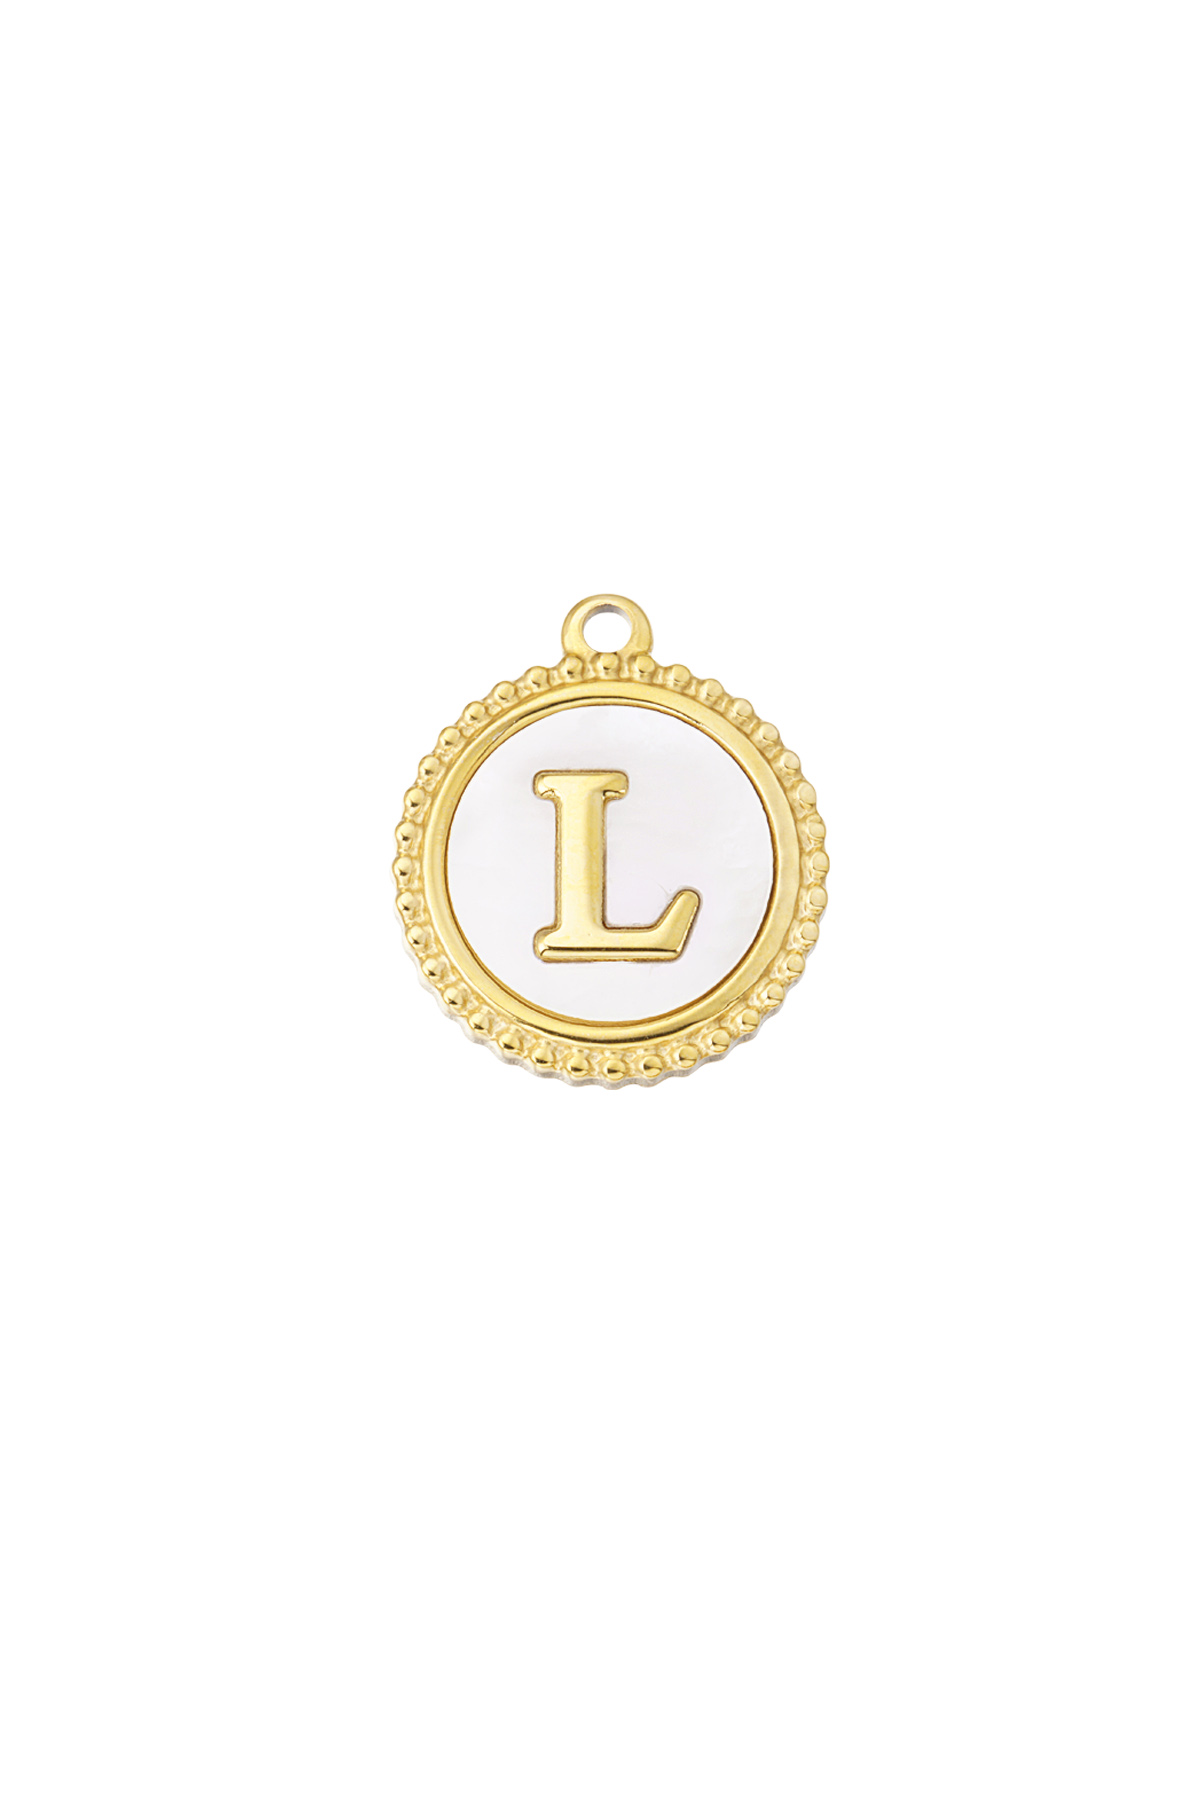 Charm eleganter L - Gold/Weiß h5 